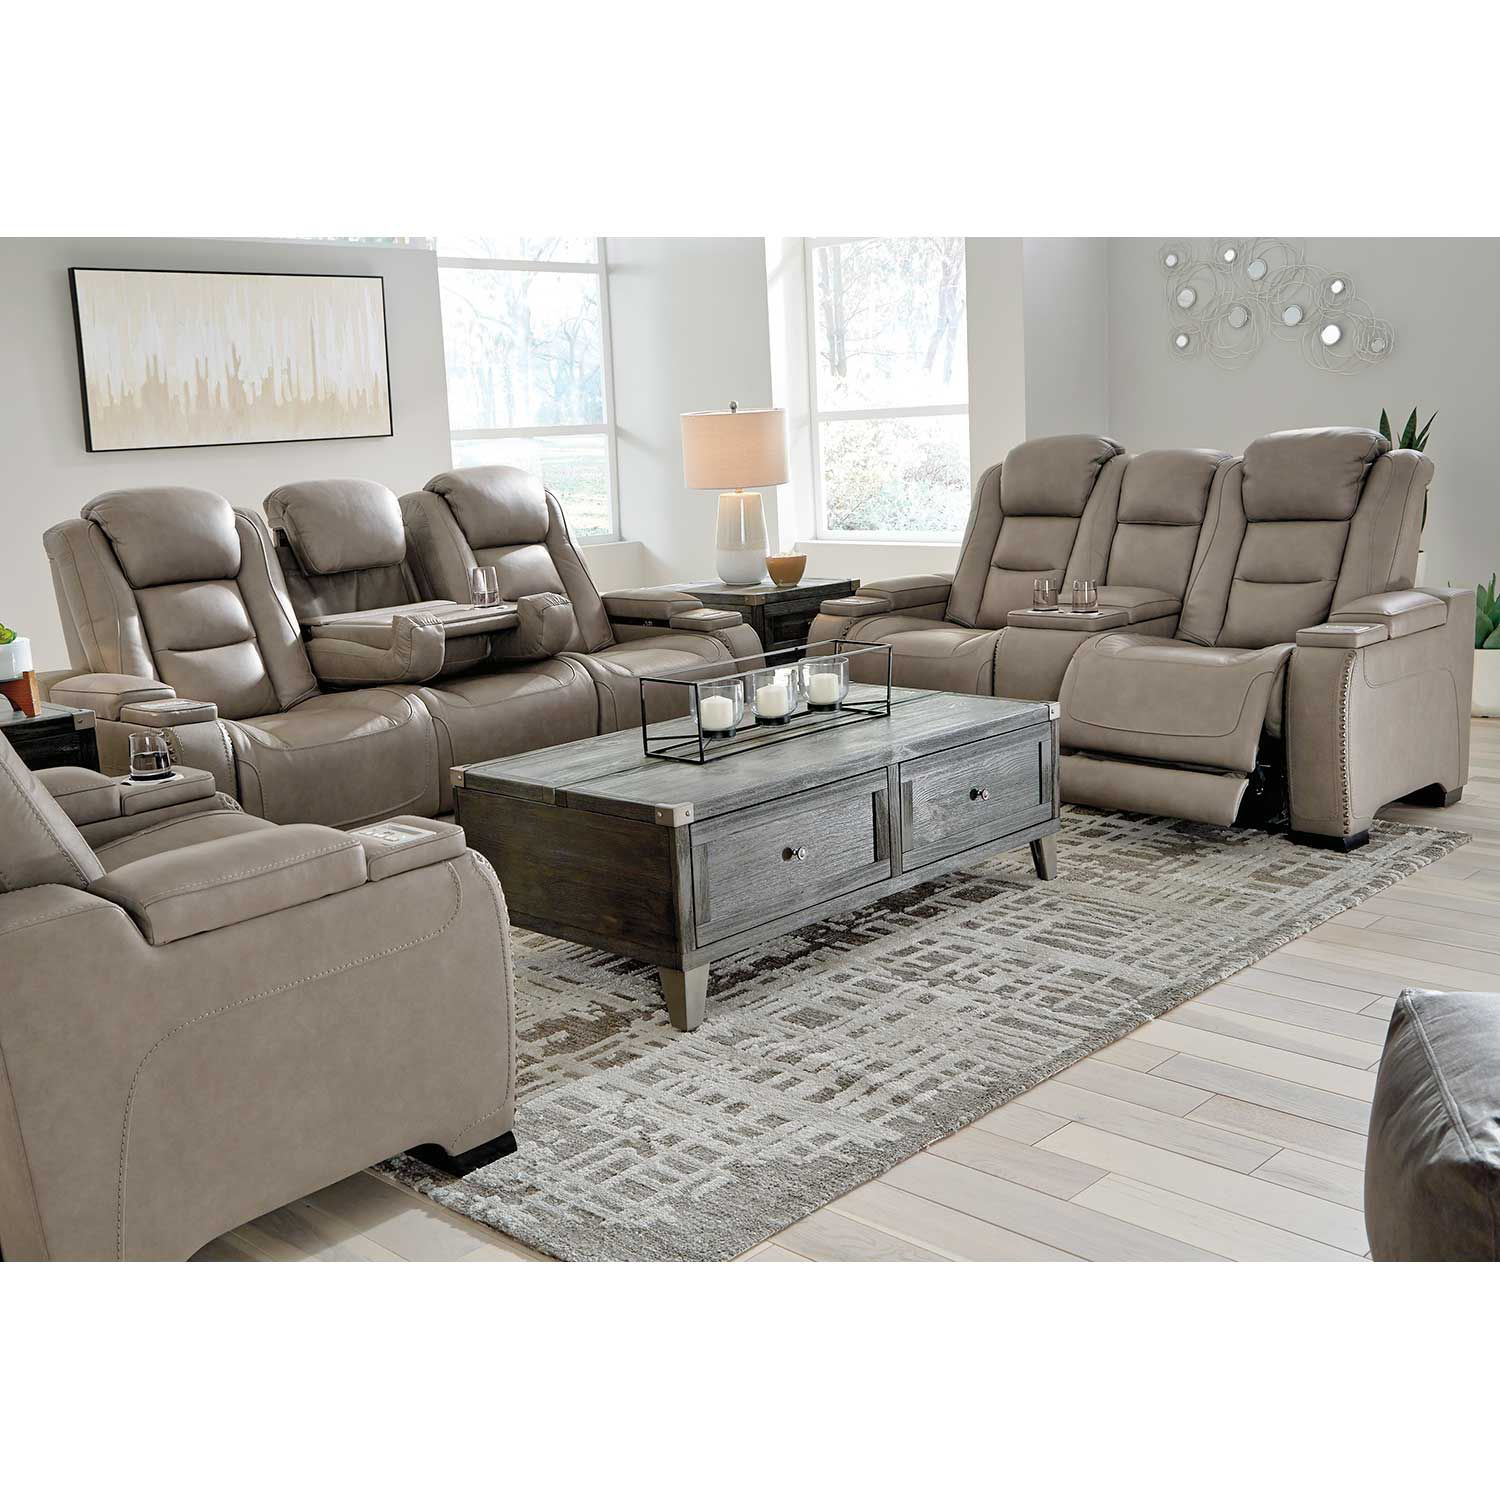 The Man-Den Power Reclining Sofa U8530515 | Ashley Furniture | AFW.com